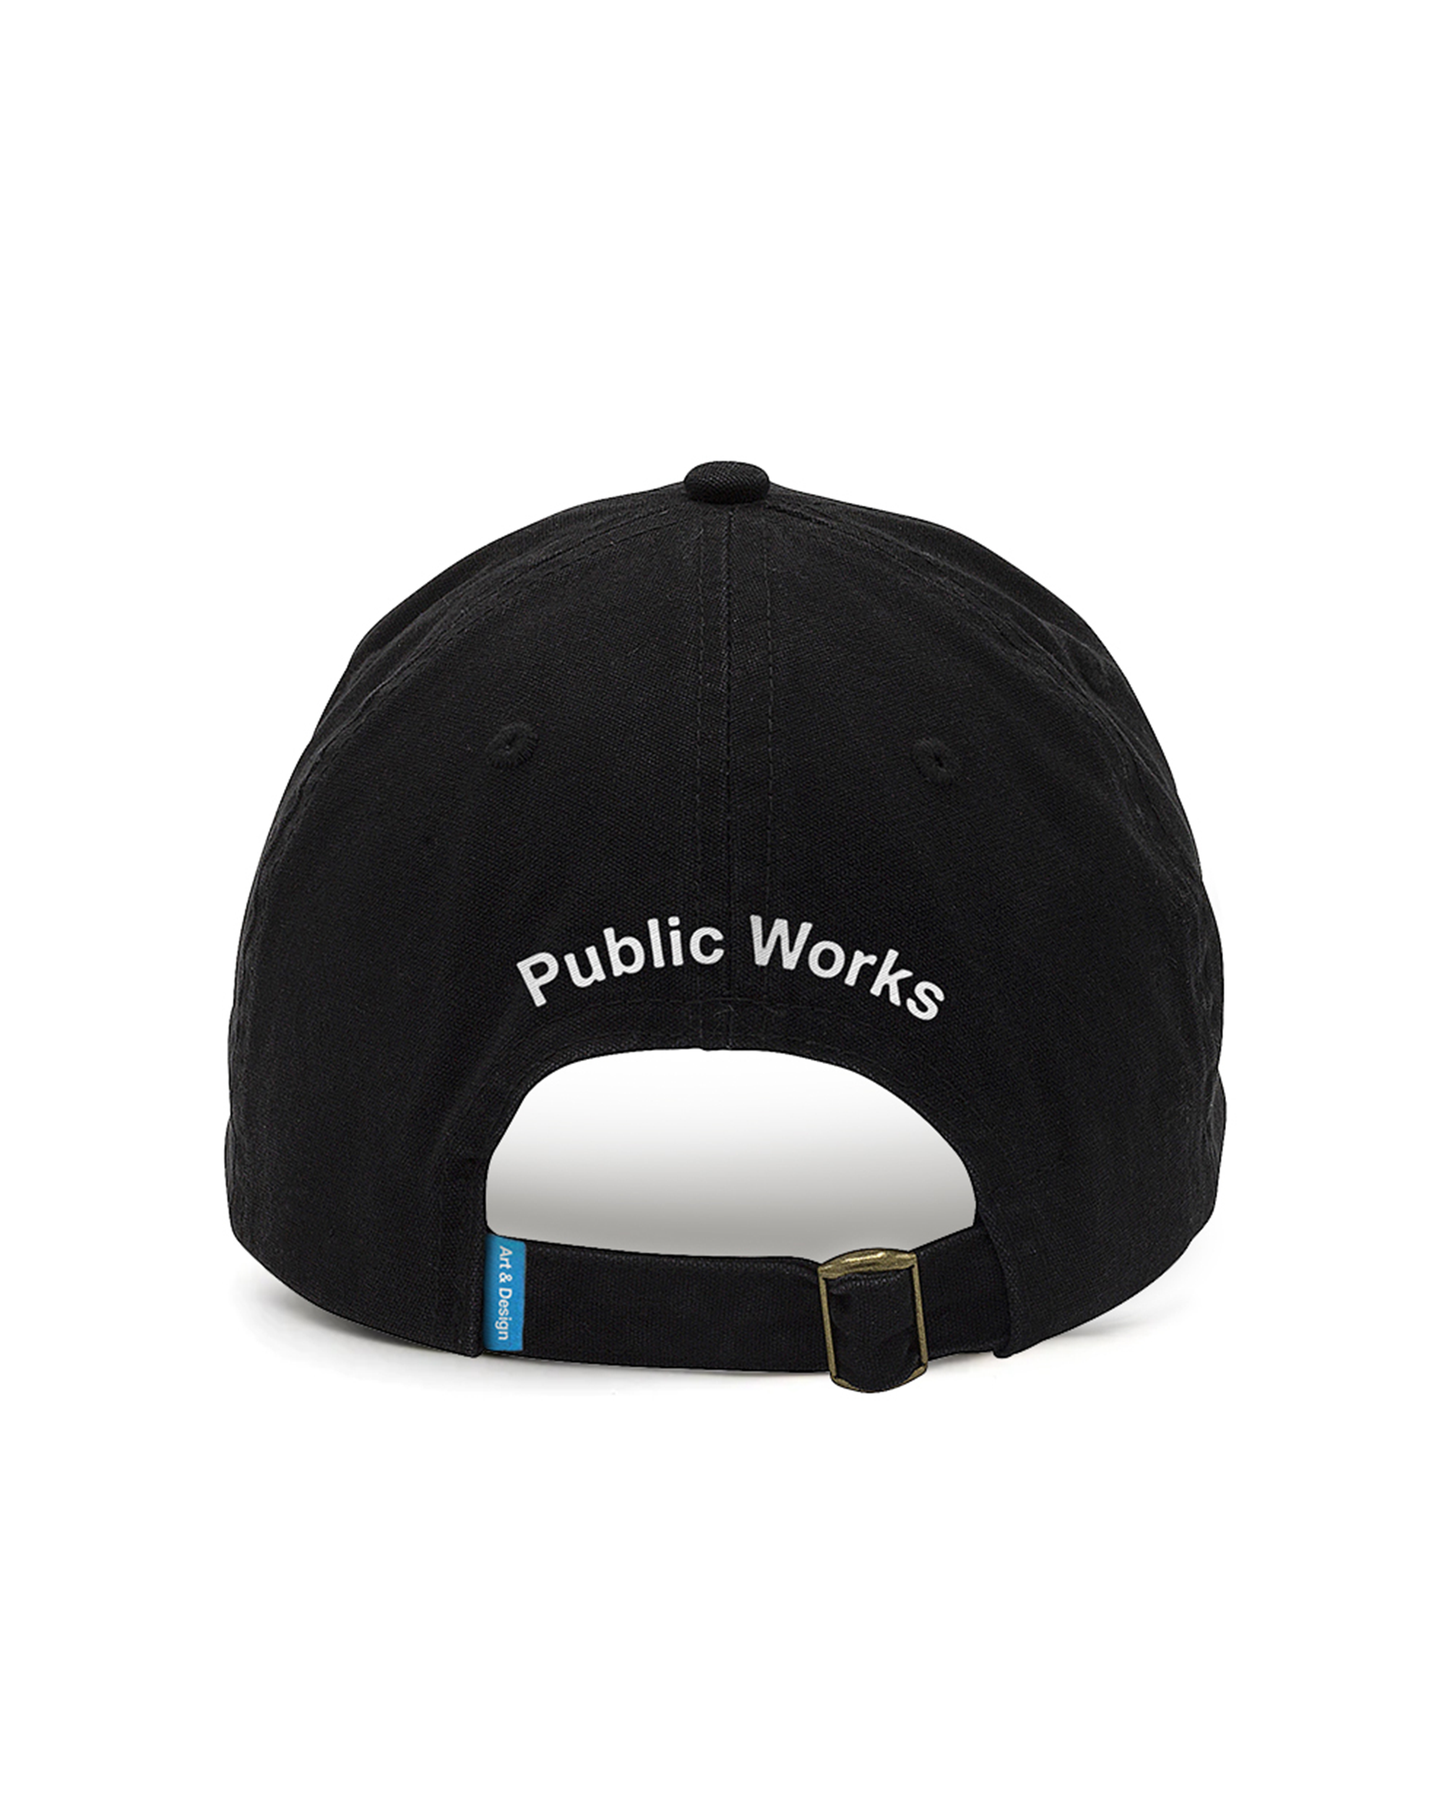 Public Works Origin Hat